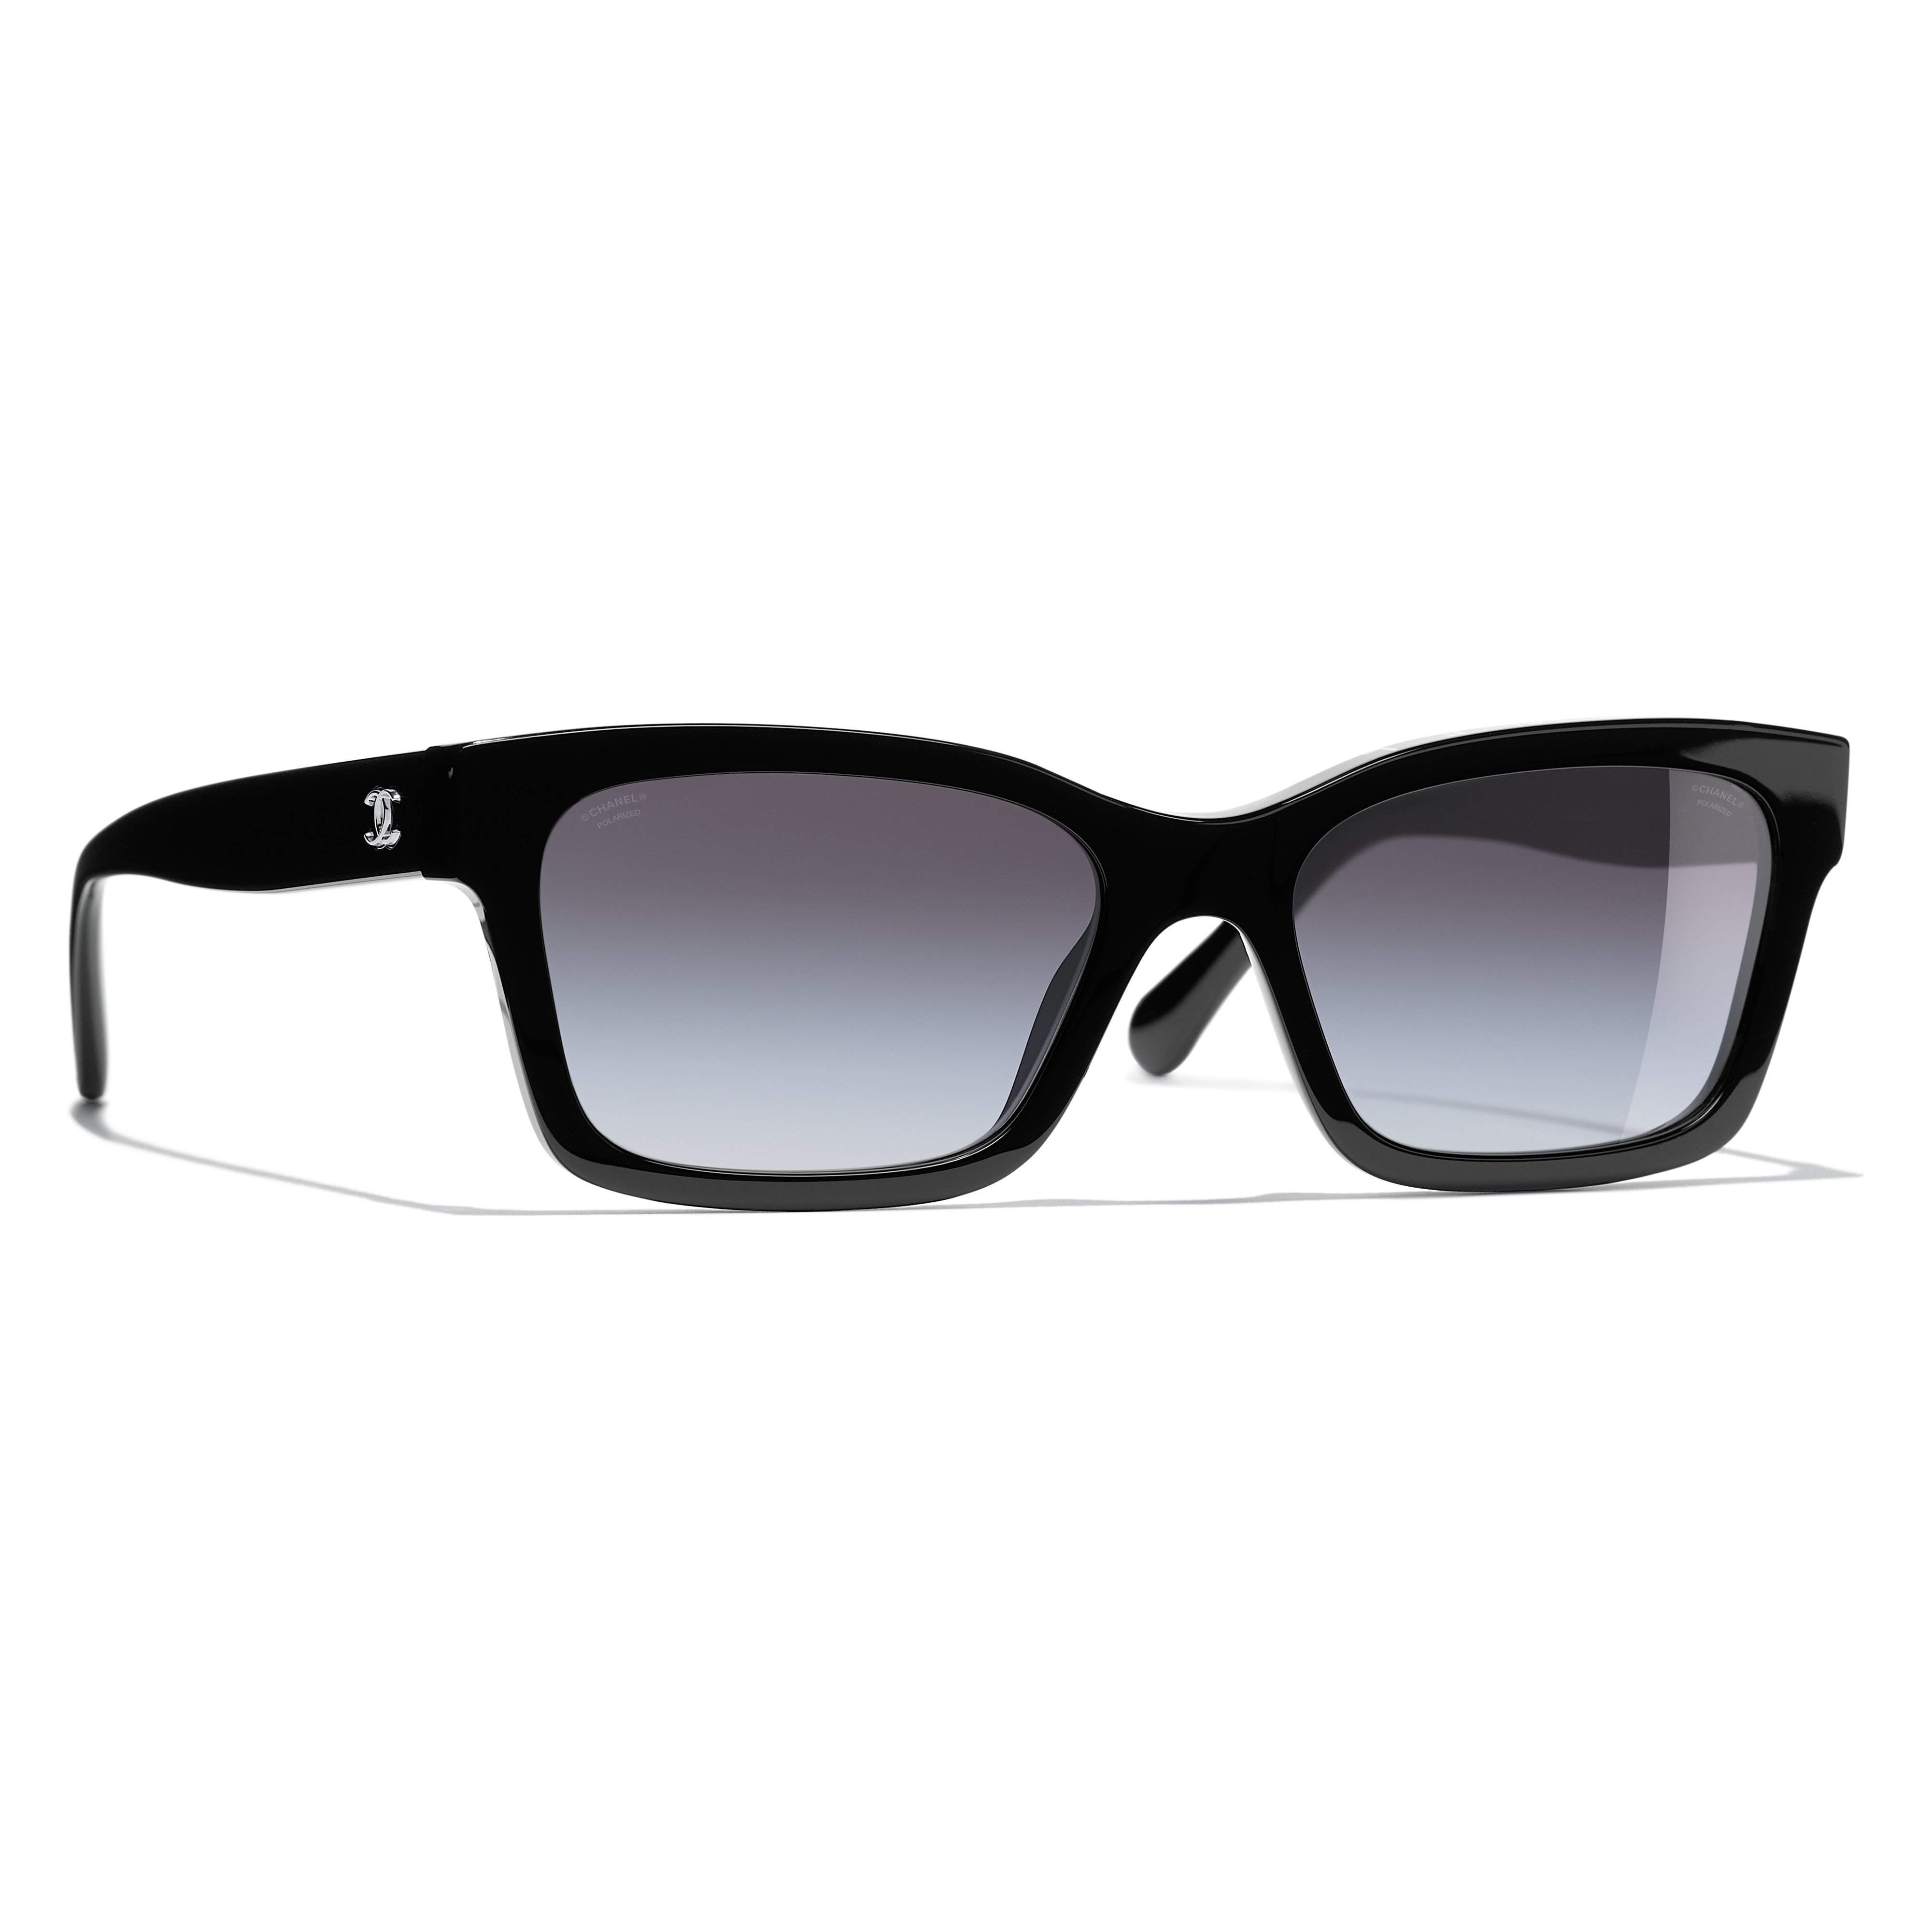 Sunglasses Chanel CH5417 C501/S8 54-17 Black Polarized Gradient in